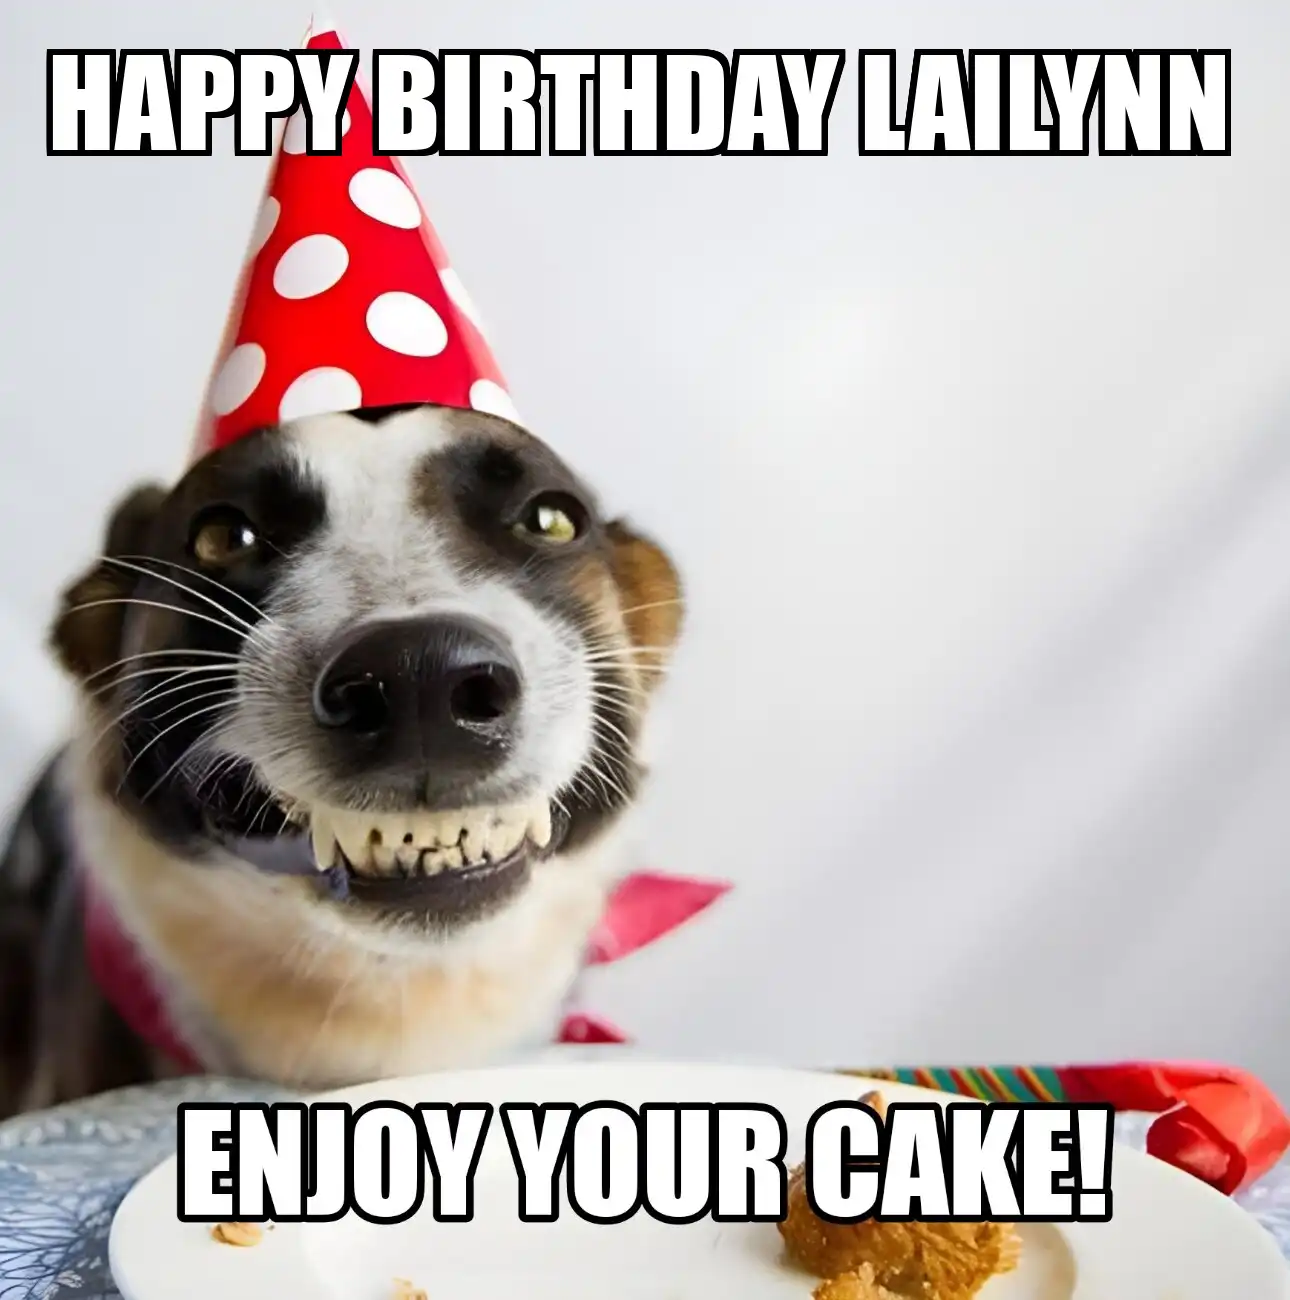 Happy Birthday Lailynn Enjoy Your Cake Dog Meme